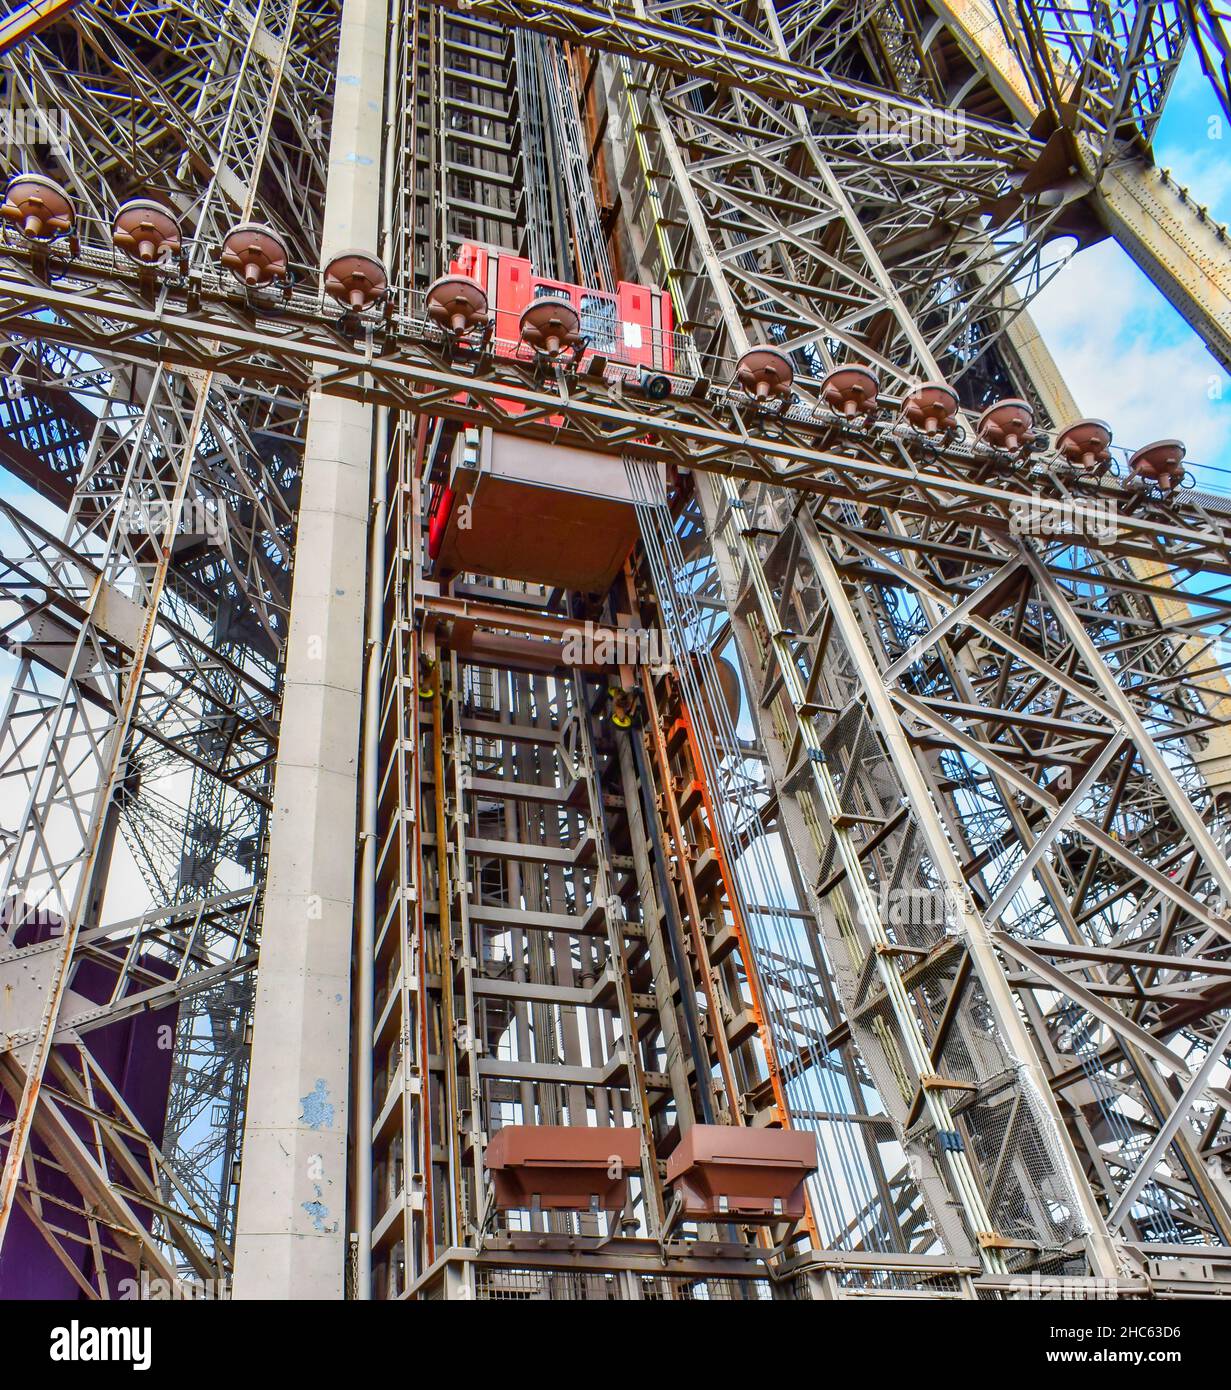 Ascensor elevador y estruca metálica de la torre Eiffel de Paris, Francia Stockfoto